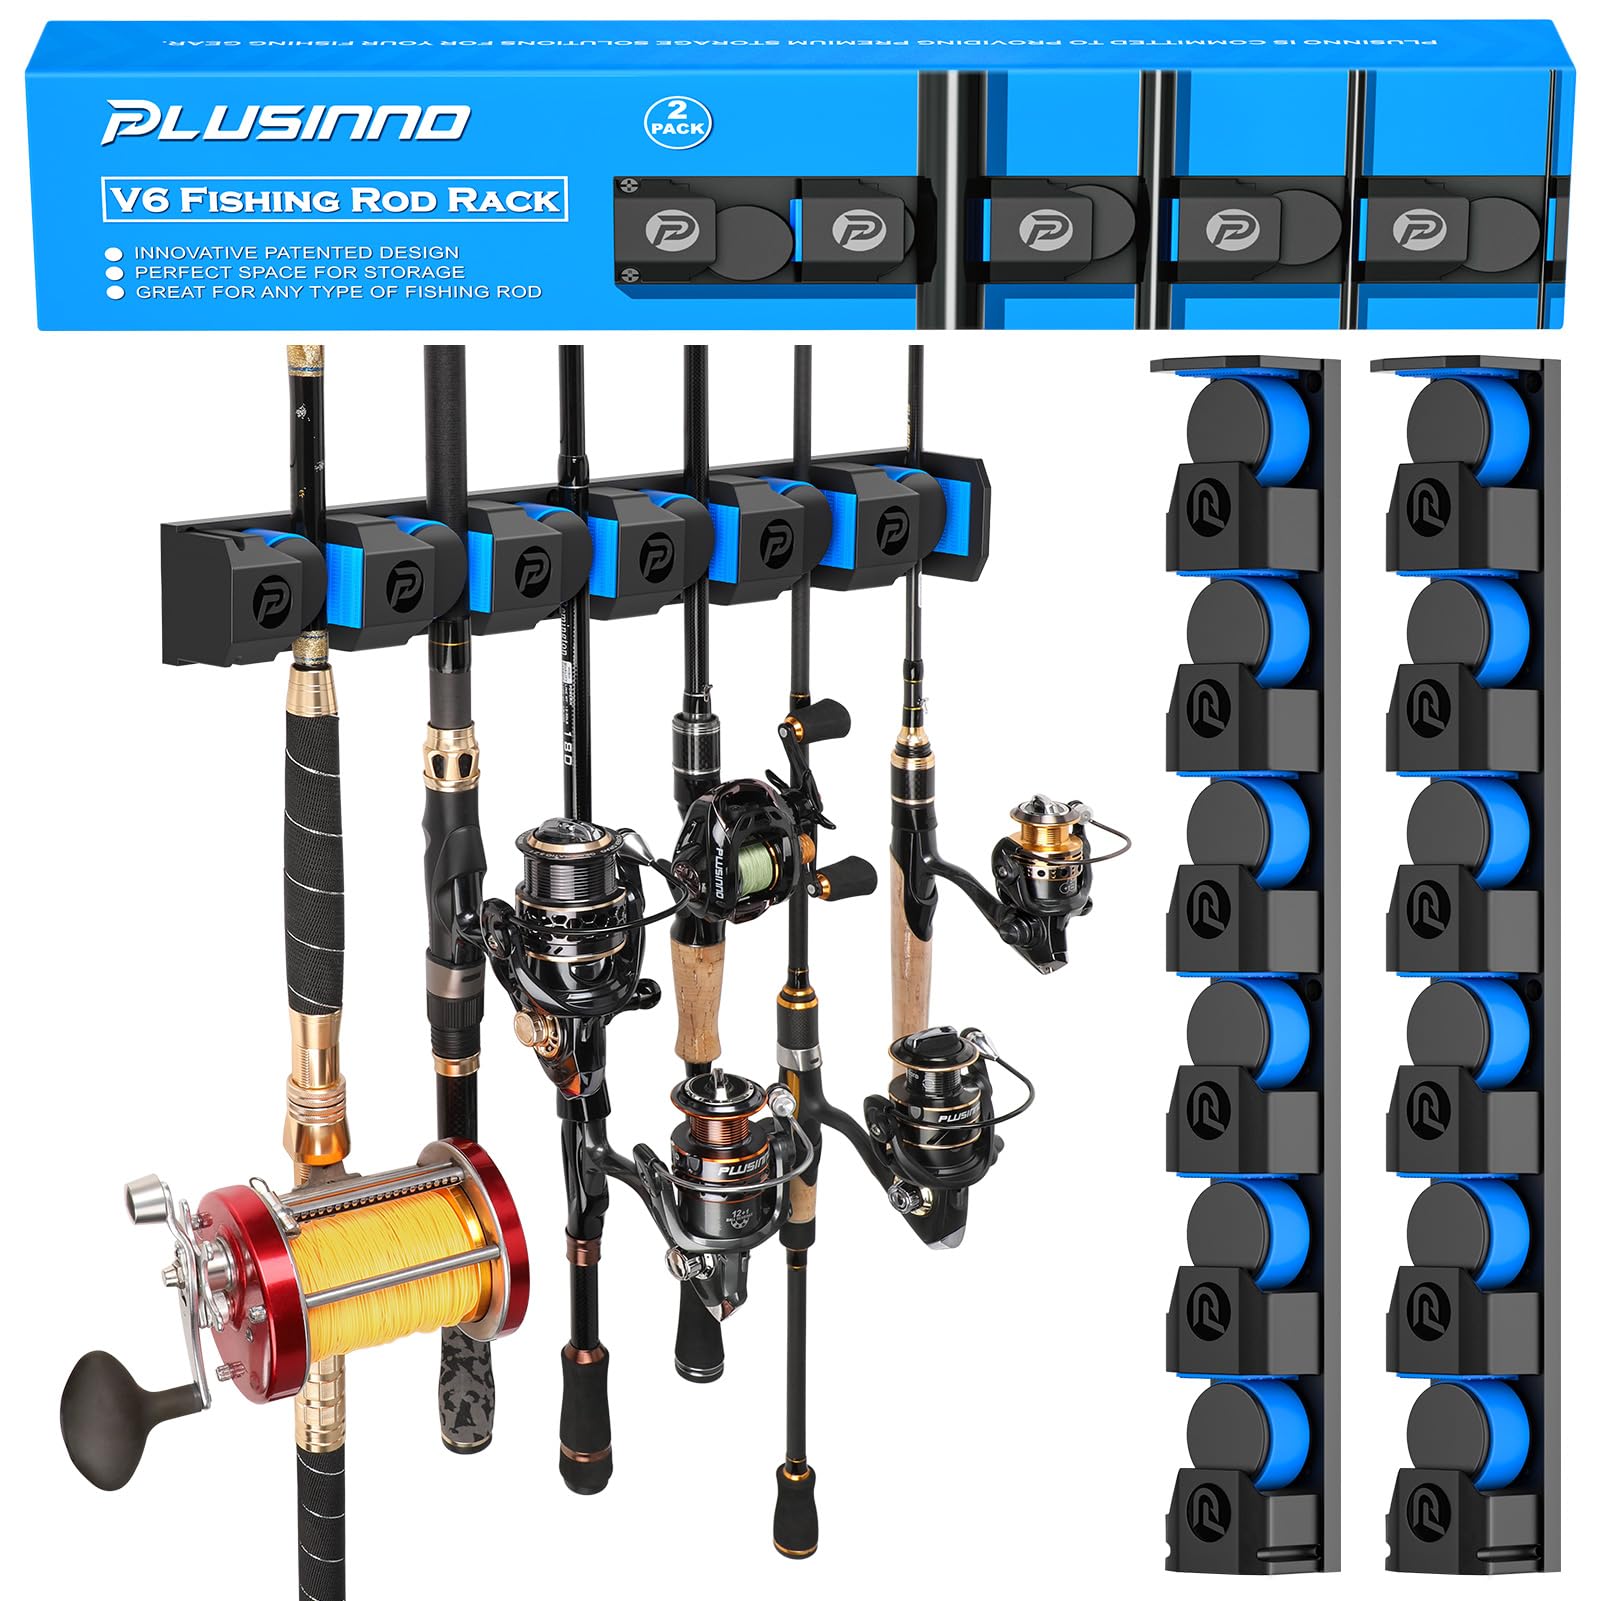 Soporte para cañas de pescar PLUSINNO V6, soporte Vertical para cañas de pescar de montaje en pared para garaje